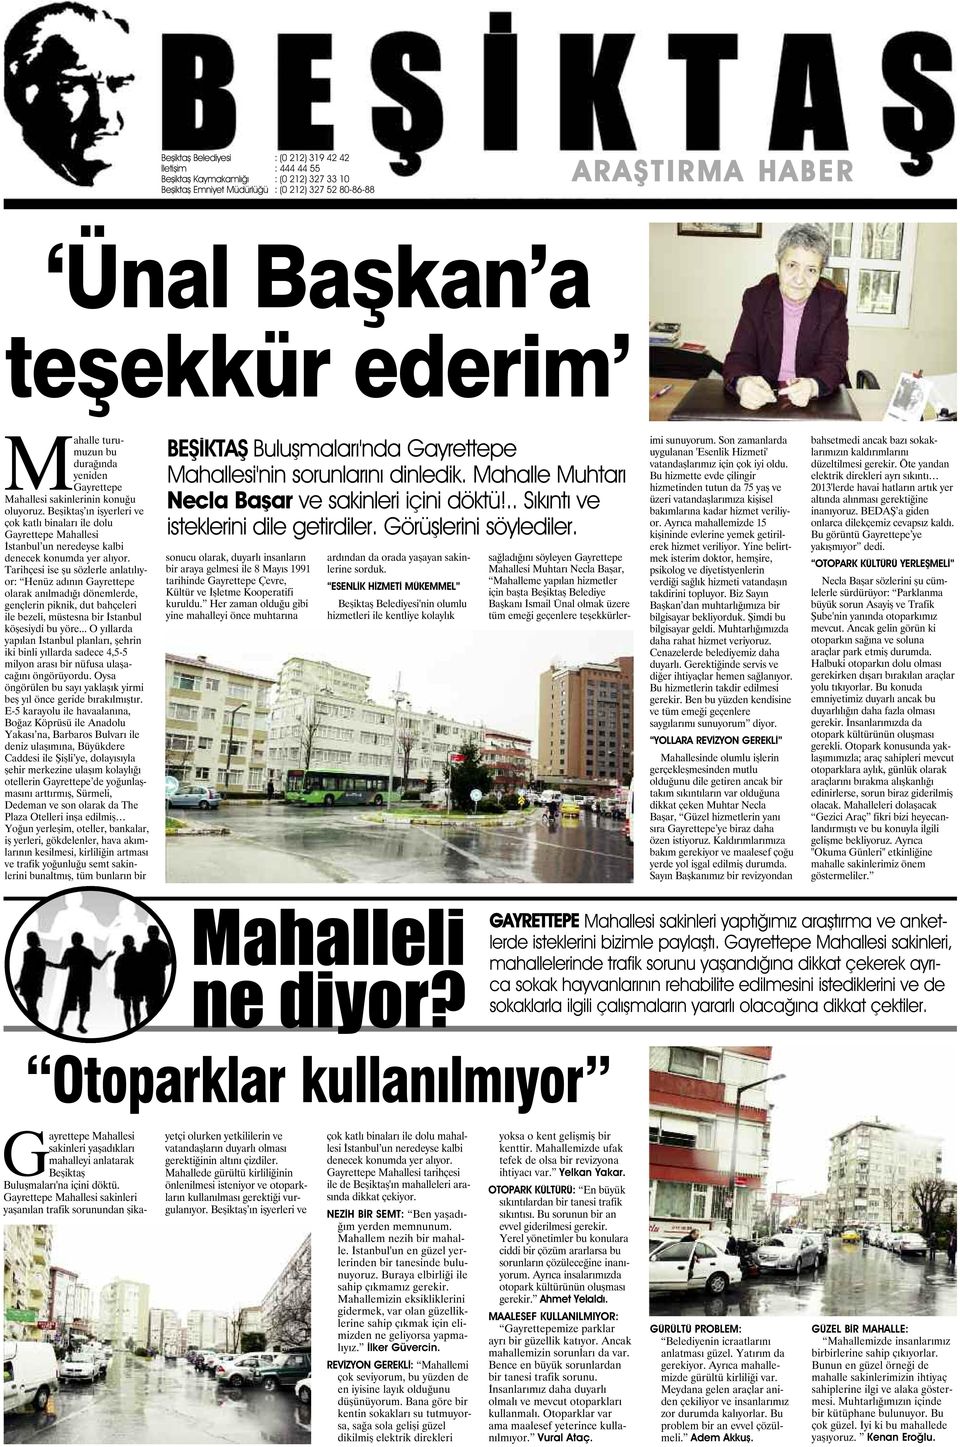 Beşiktaş ın işyerleri ve çok katlı binaları ile dolu Gayrettepe Mahallesi İstanbul un neredeyse kalbi denecek konumda yer alıyor.